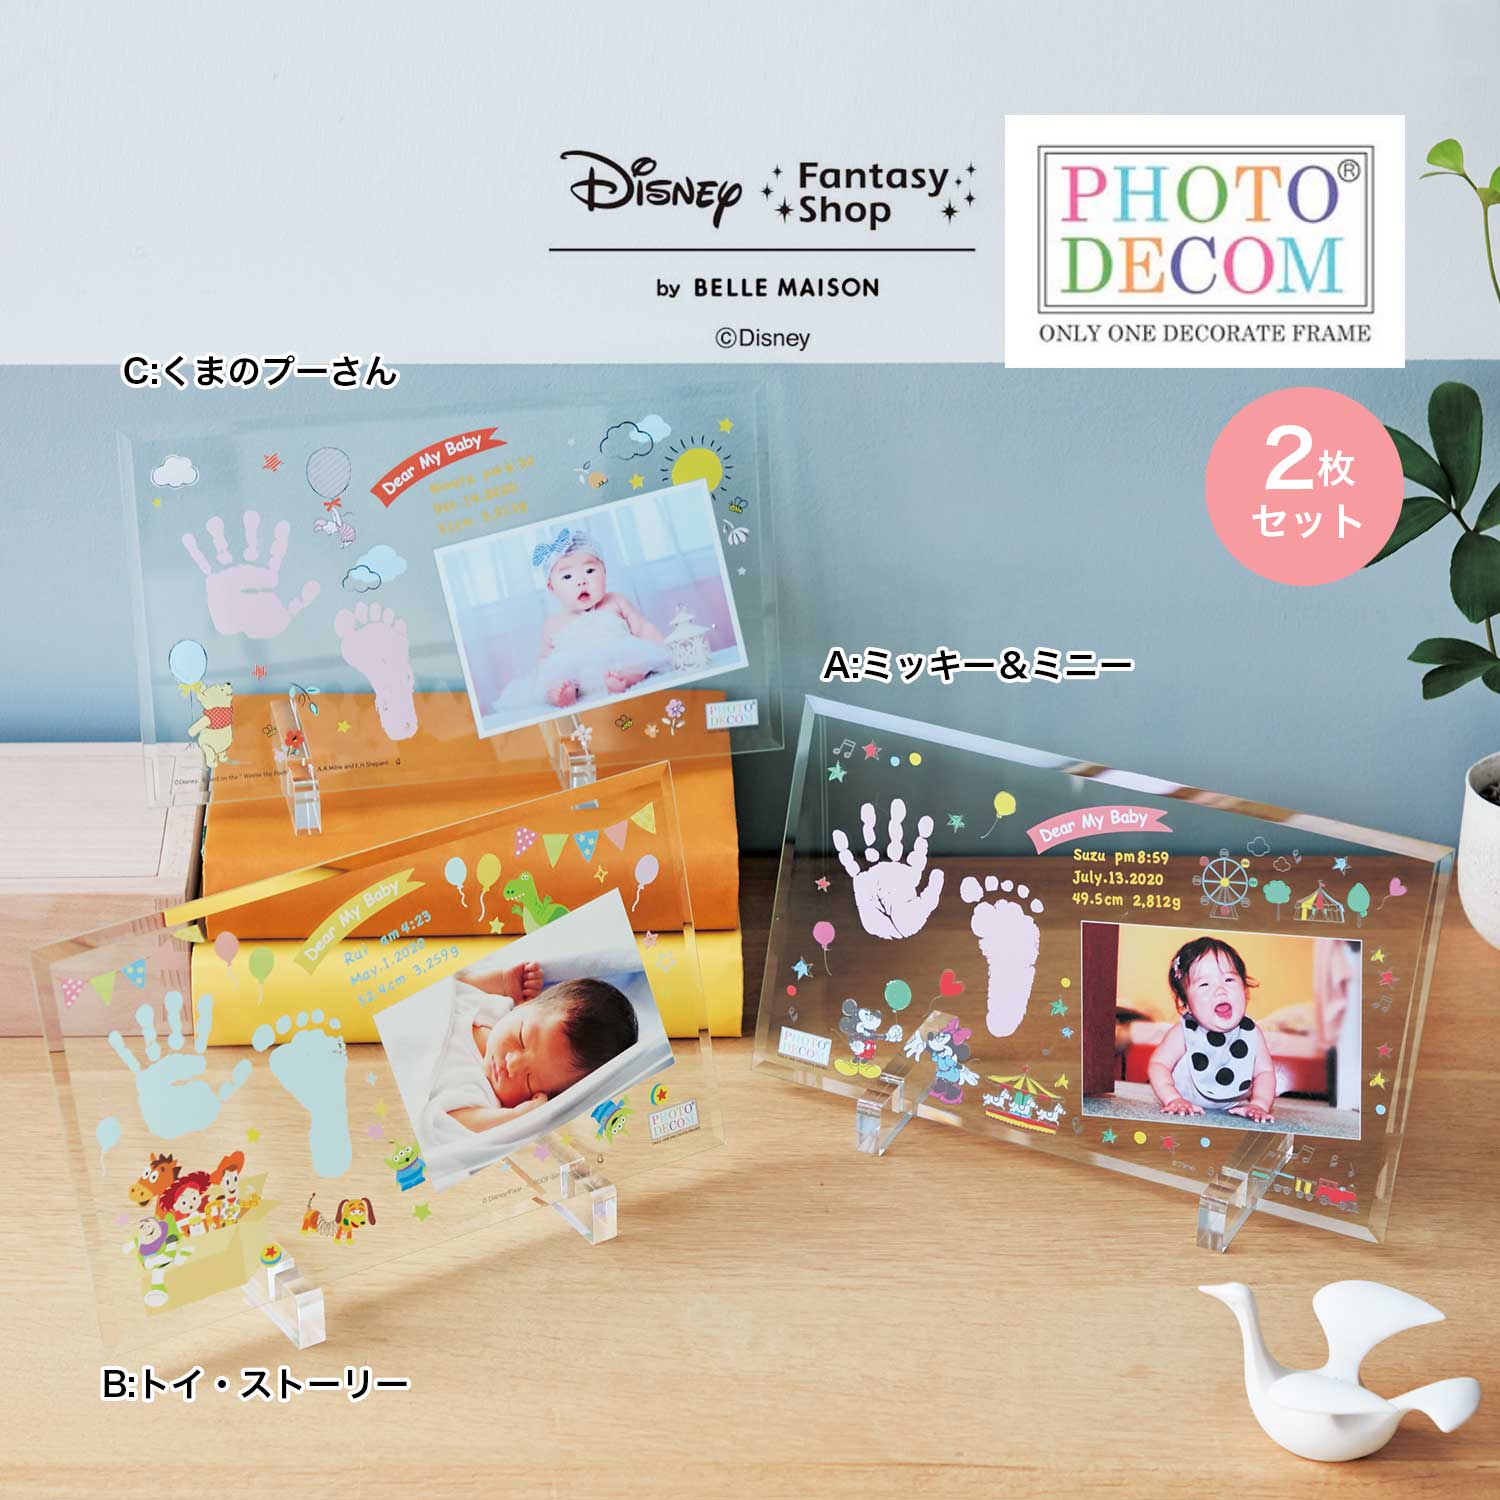 【ディズニー/Disney】【送料無料】 ディズニー フォトデコム・クリアガラス手形足形メモリアルお仕立券2枚セット